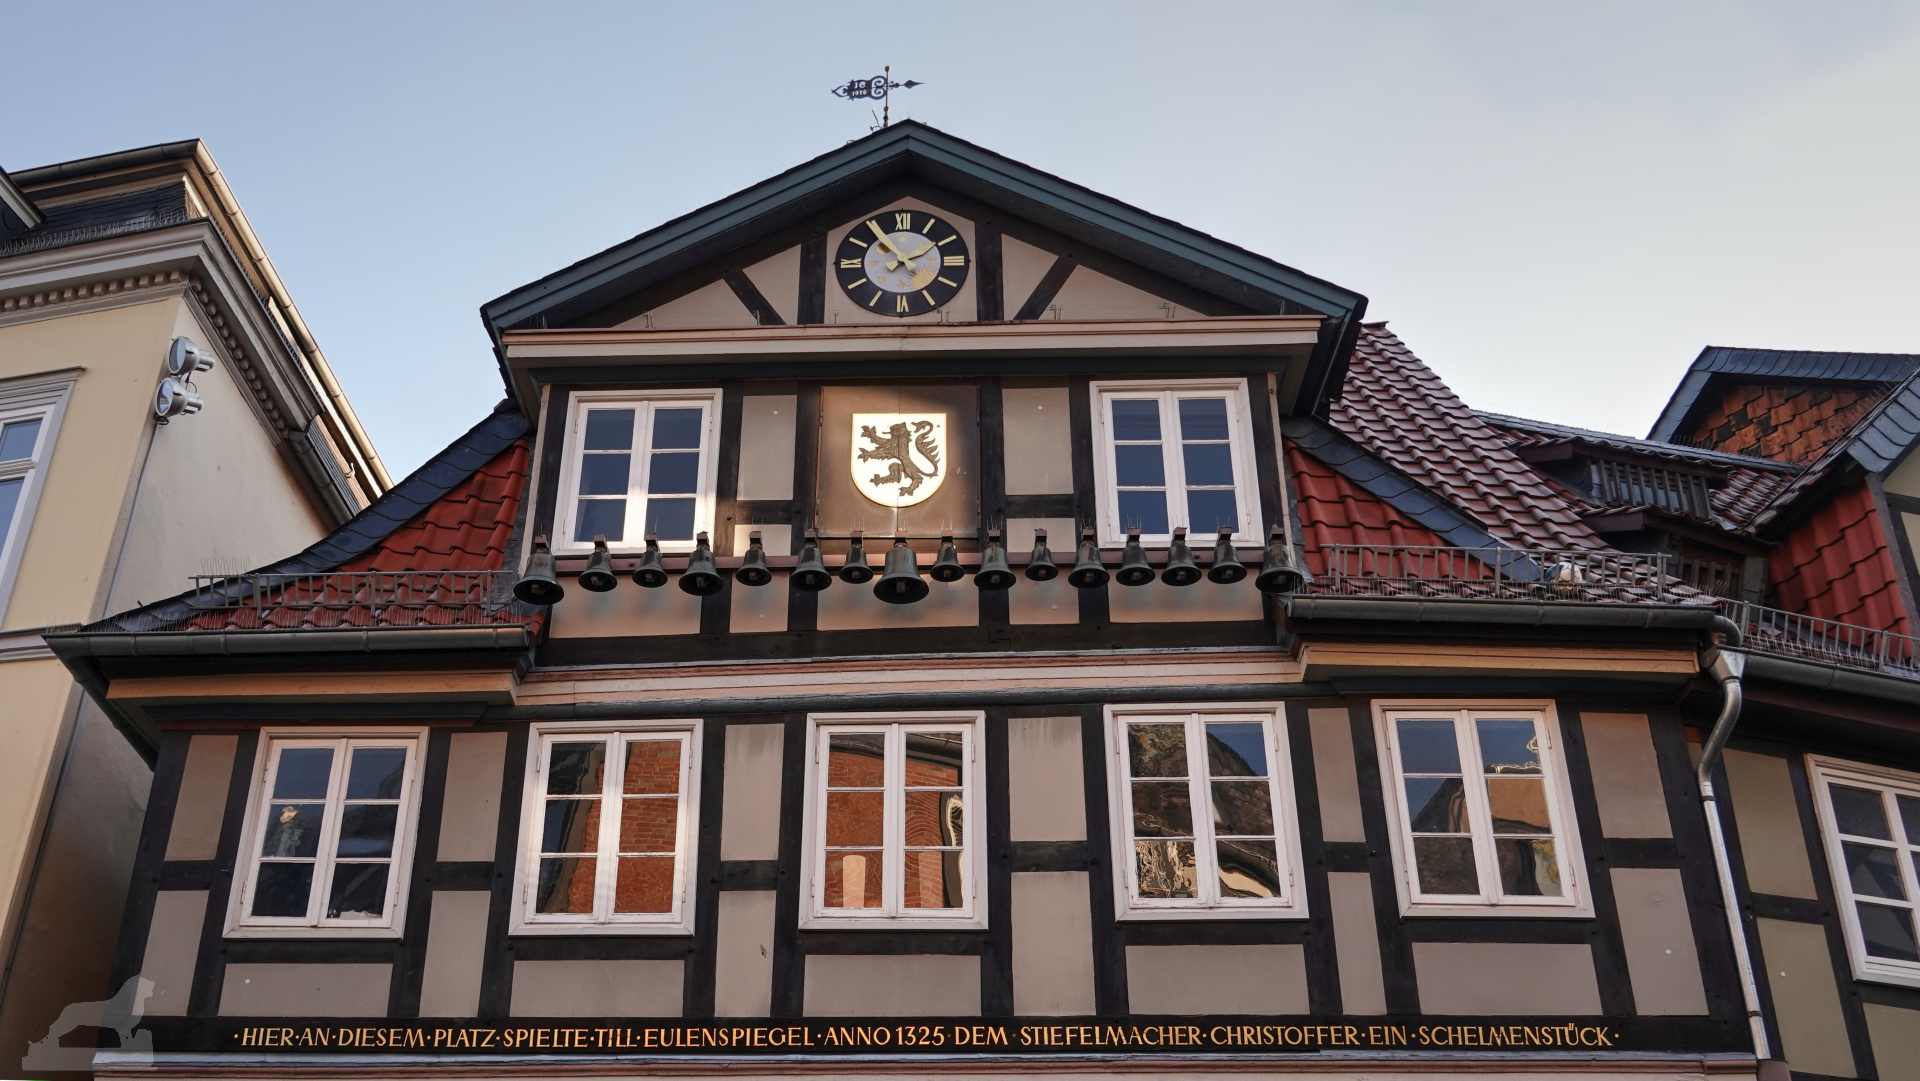 Kohlmarkt - Haus mit Eulenspiegel-Glockenspiel